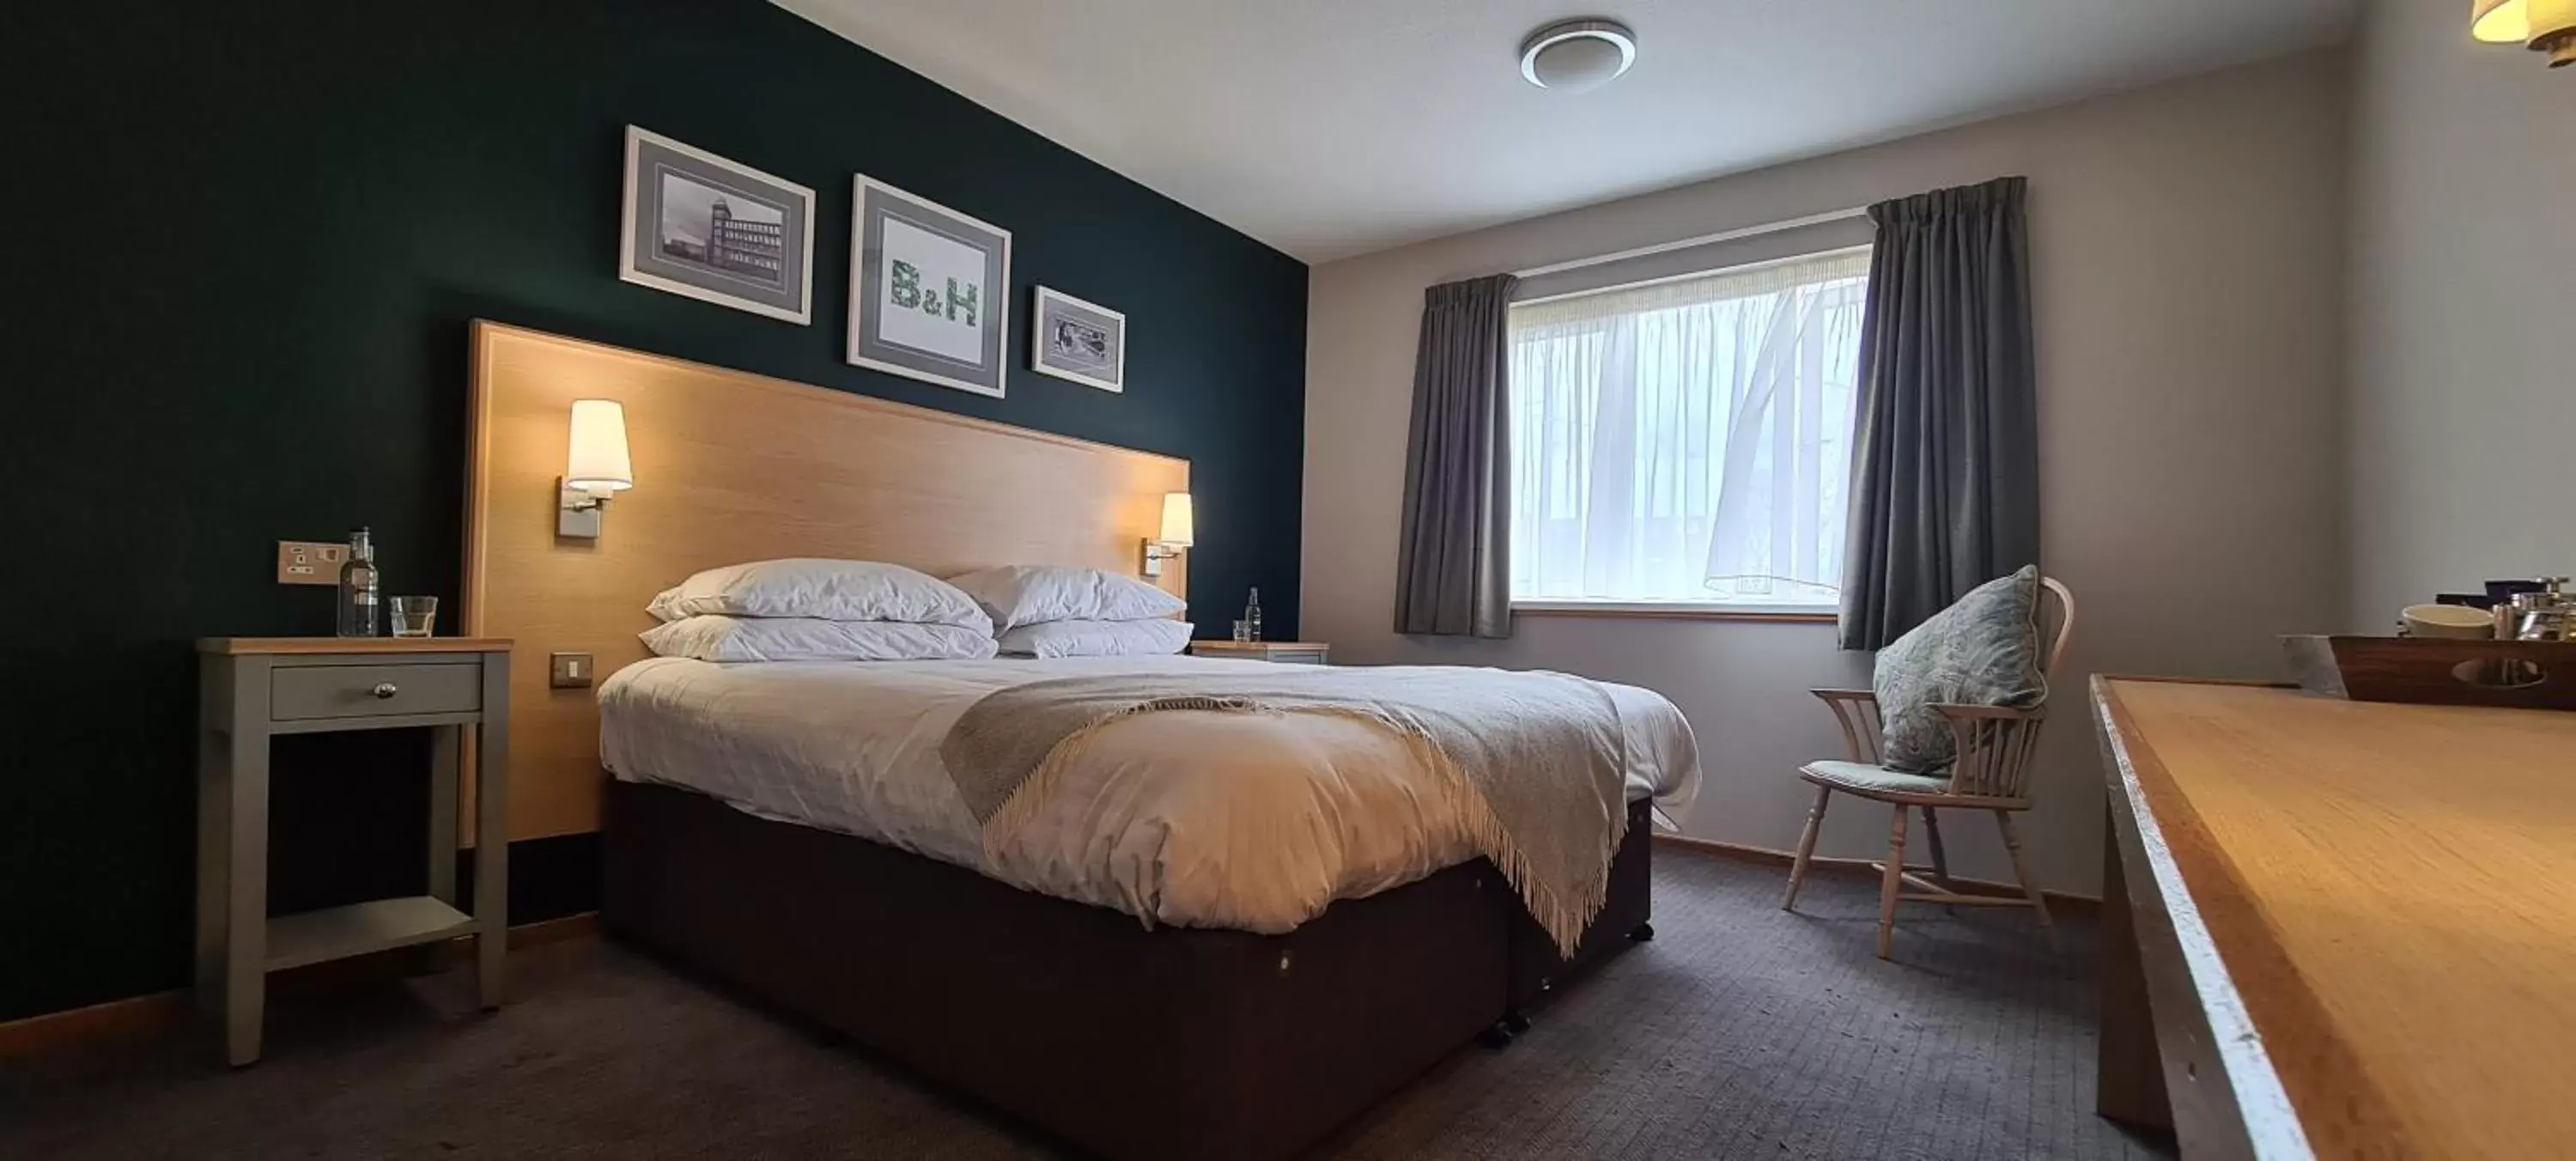 Bedroom, Bed in Boat & Horses Inn